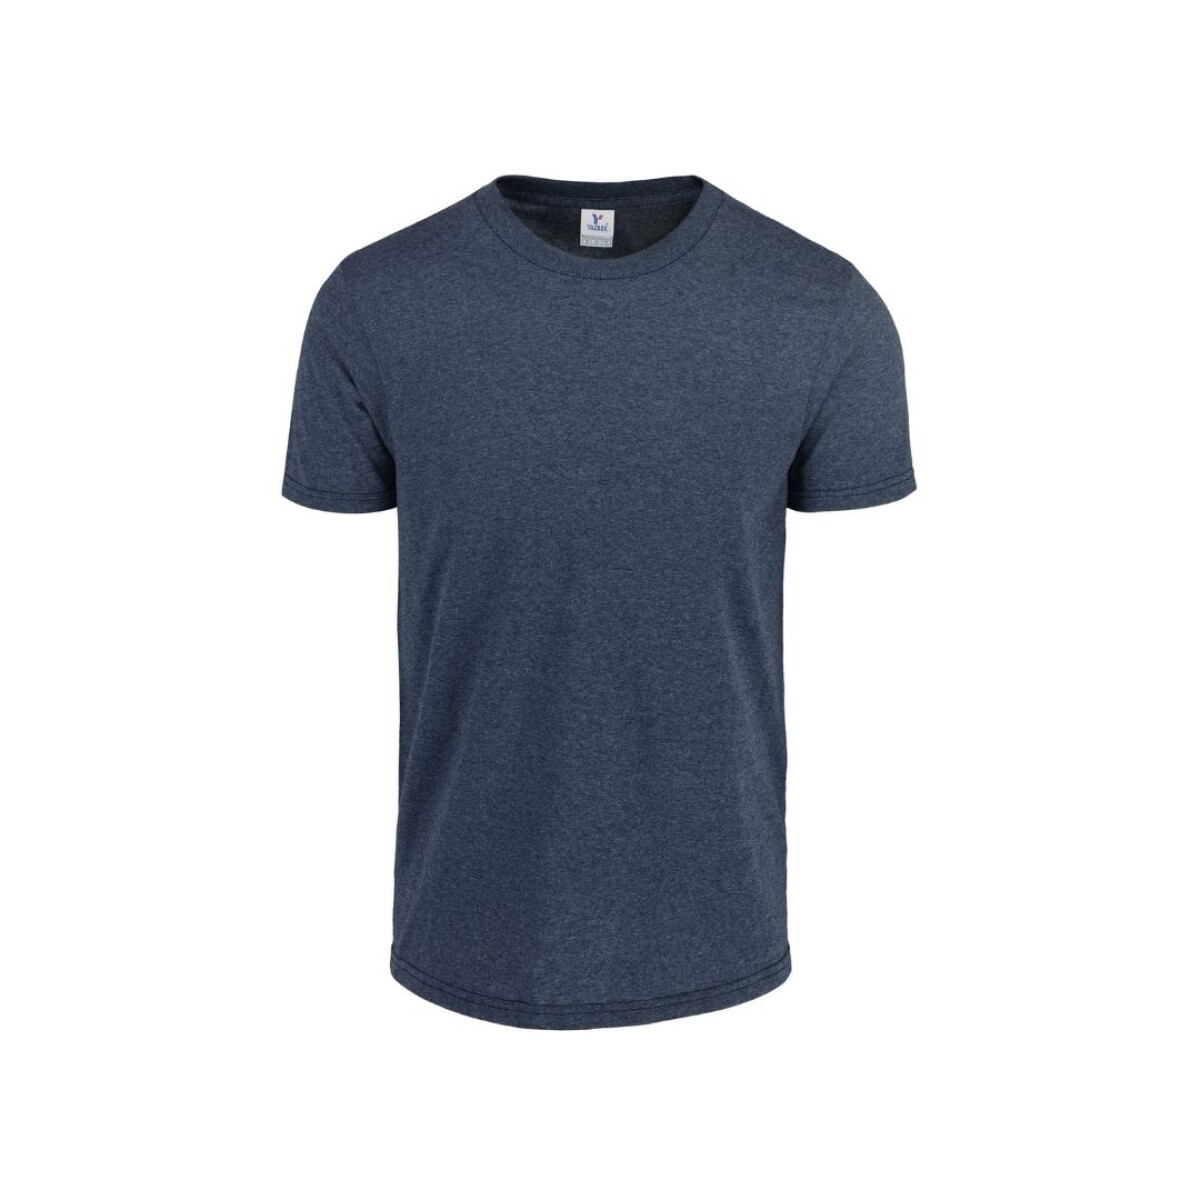 Camiseta a la base jaspe - Azul marino jaspe 